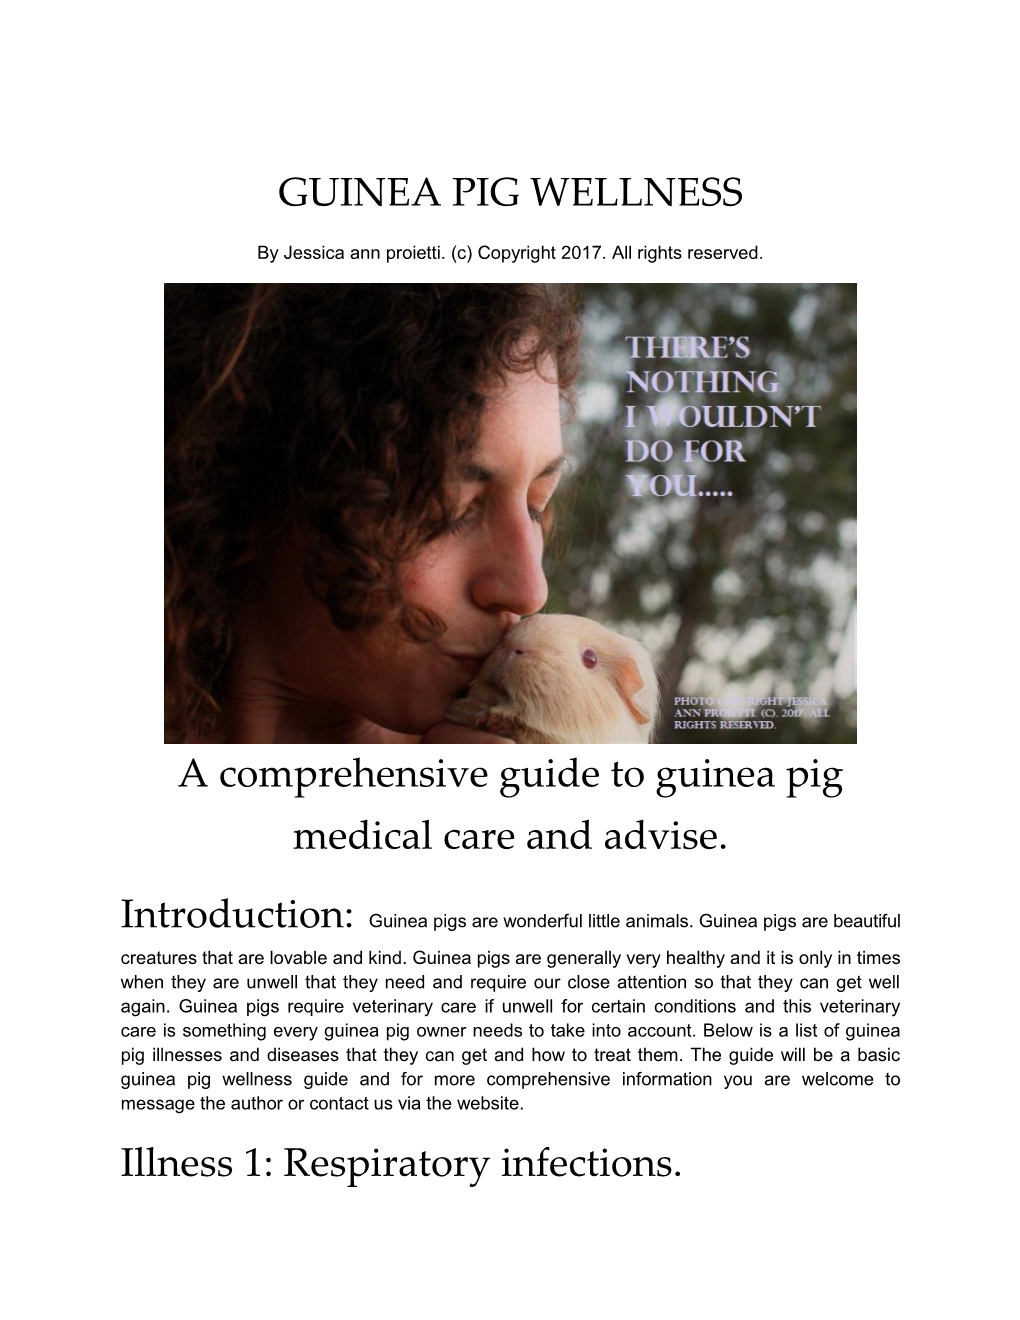 GUINEA PIG WELLNESS a Comprehensive Guide to Guinea Pig Medical Care and Advise. Illness 1